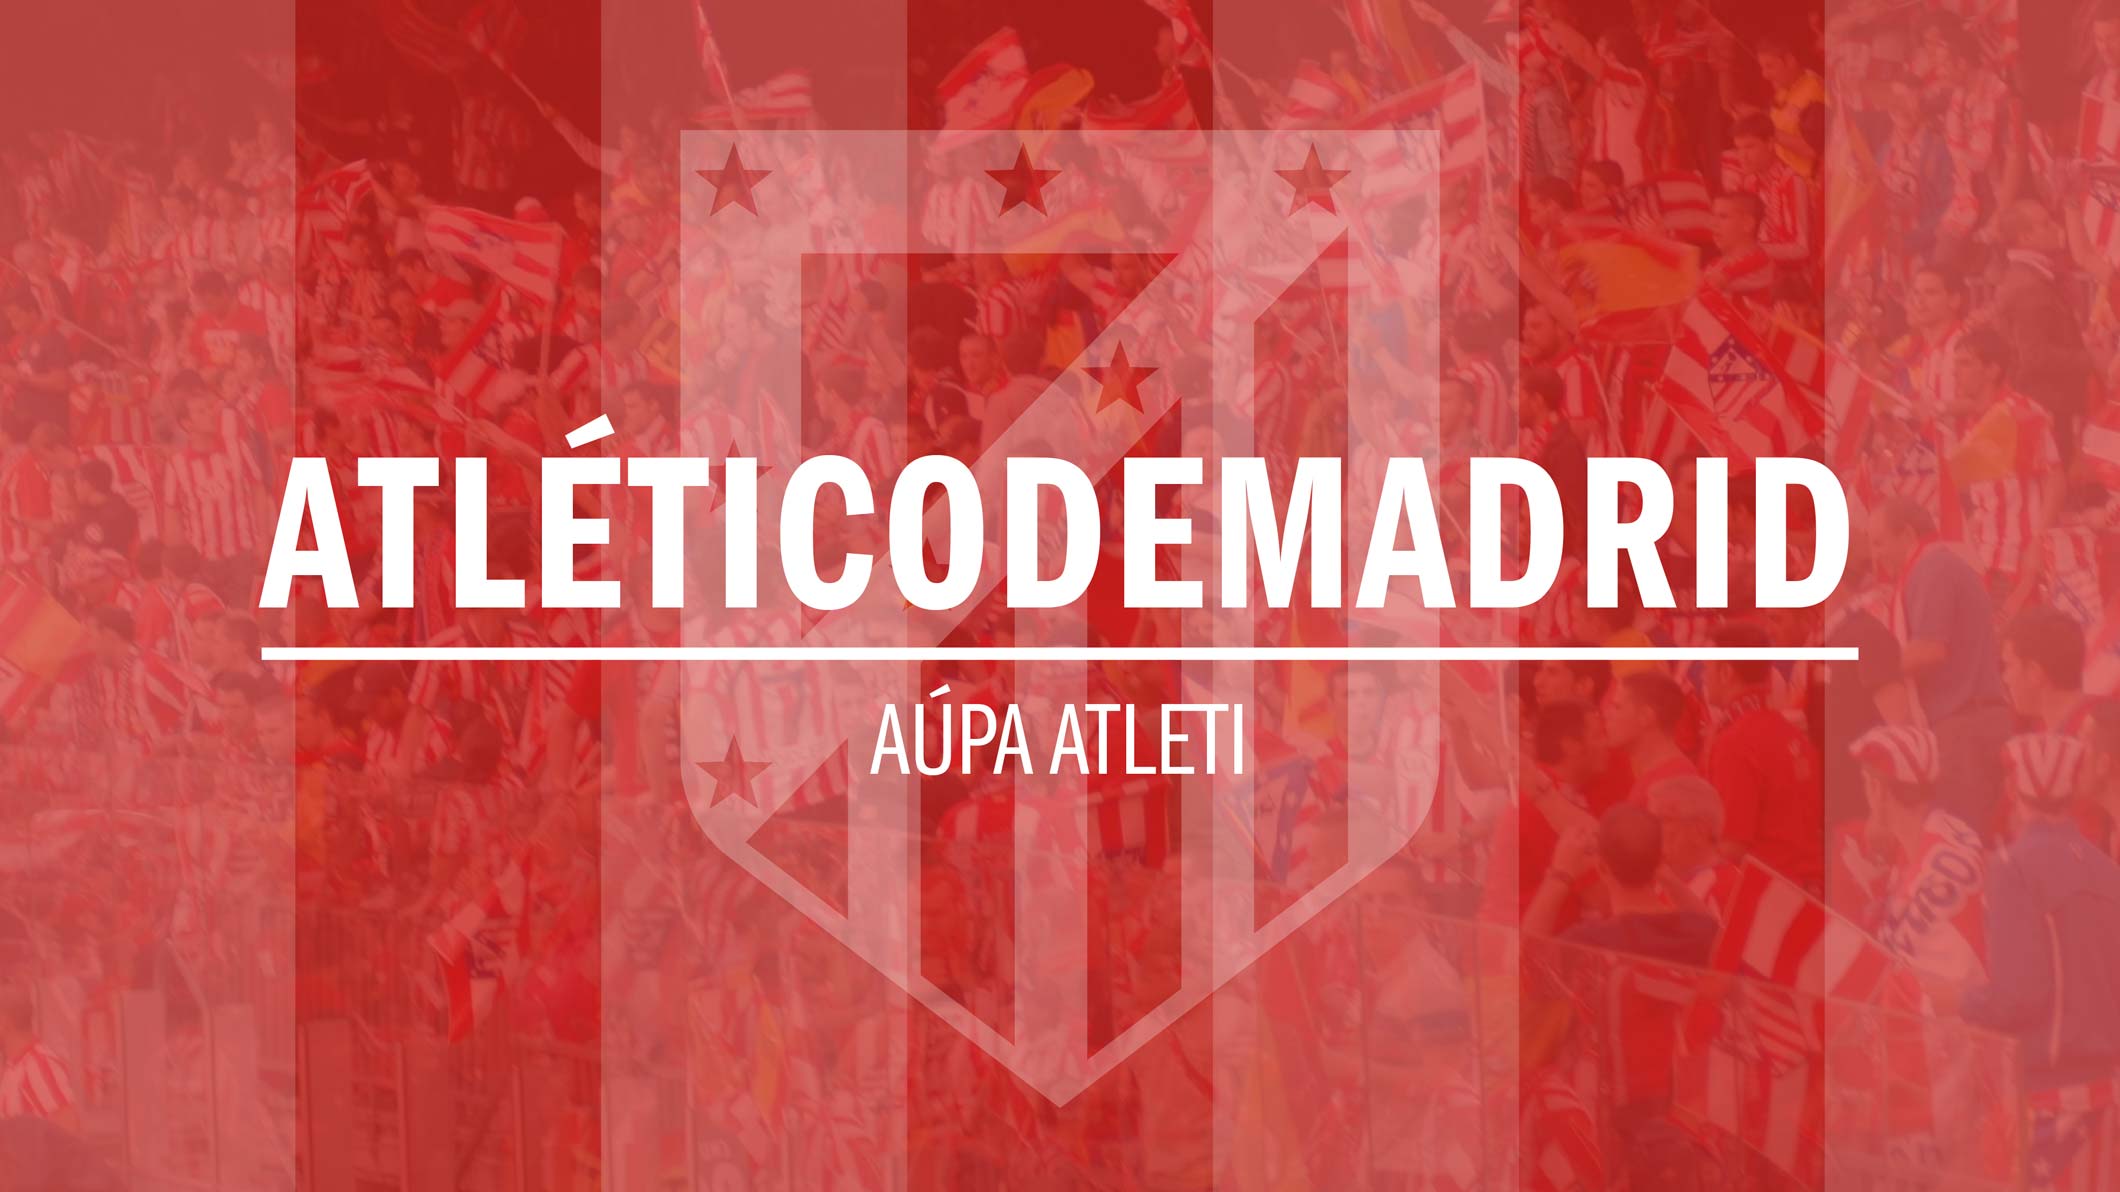 باشگاه فوتبال اتلتیکو مادرید (atletico madrid)